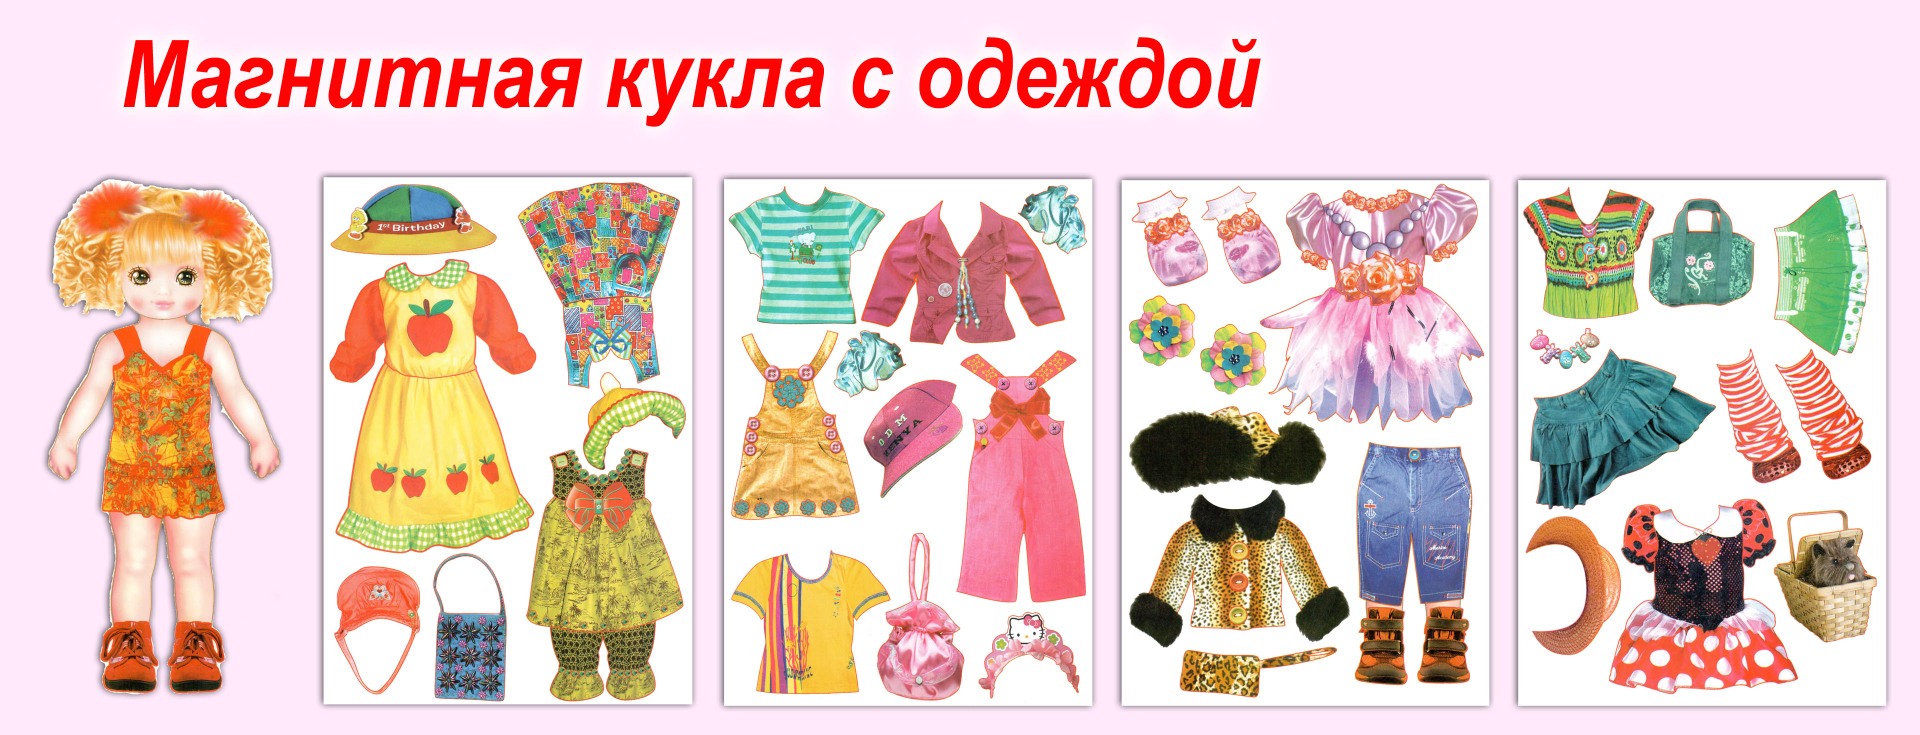 Игра куклы одежда. Бумажные куклы с одеждой. Оденем куклу на прогулку. Кукла с одеждой для детей. Одежда для кукол.